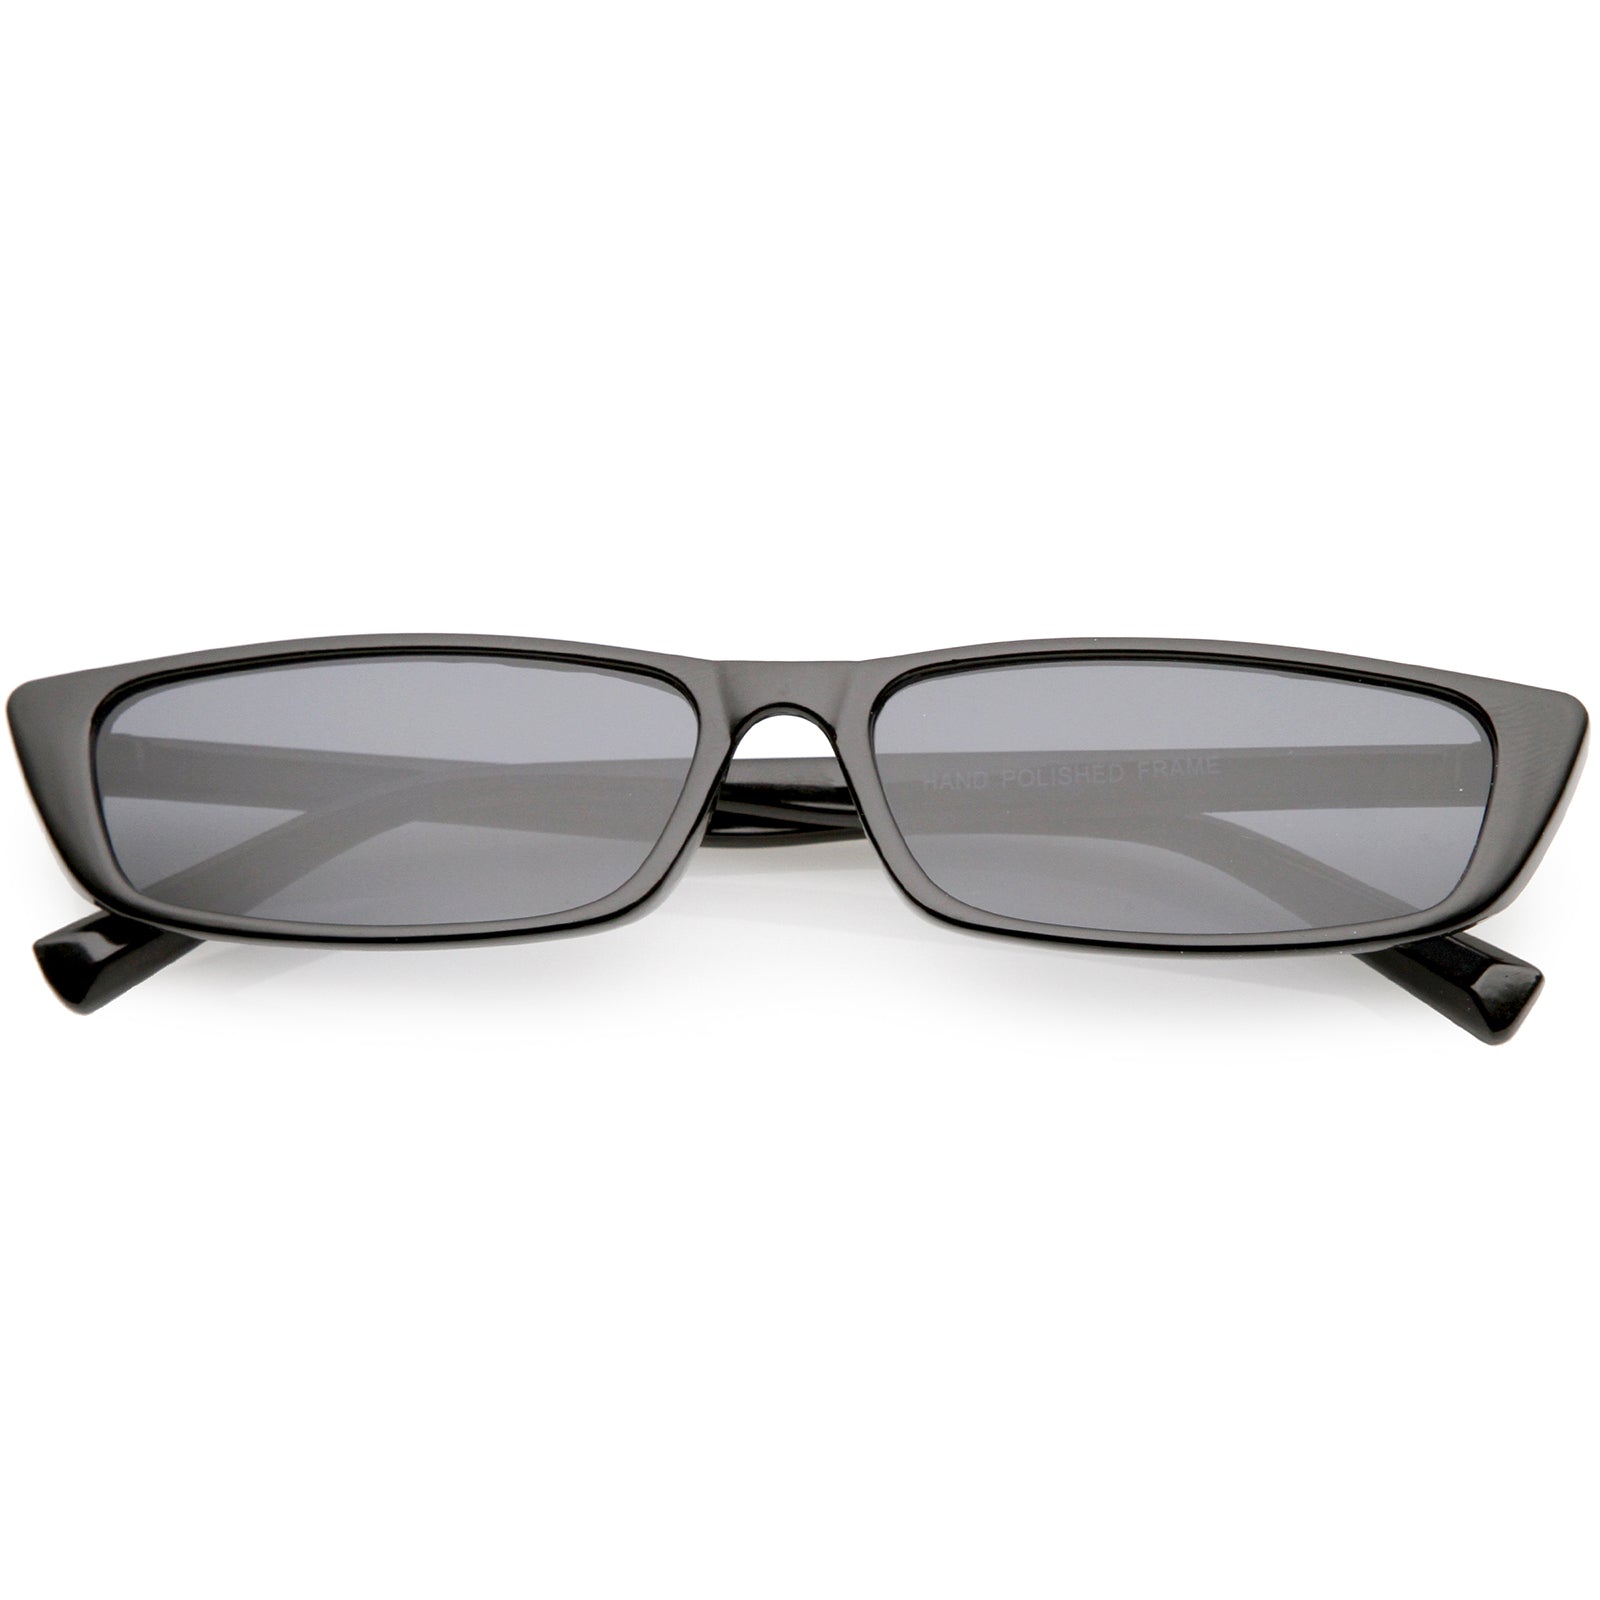 Retro Slim Rectangle Cat Eye Sunglasses Neutral Colored 57mm - sunglass .la